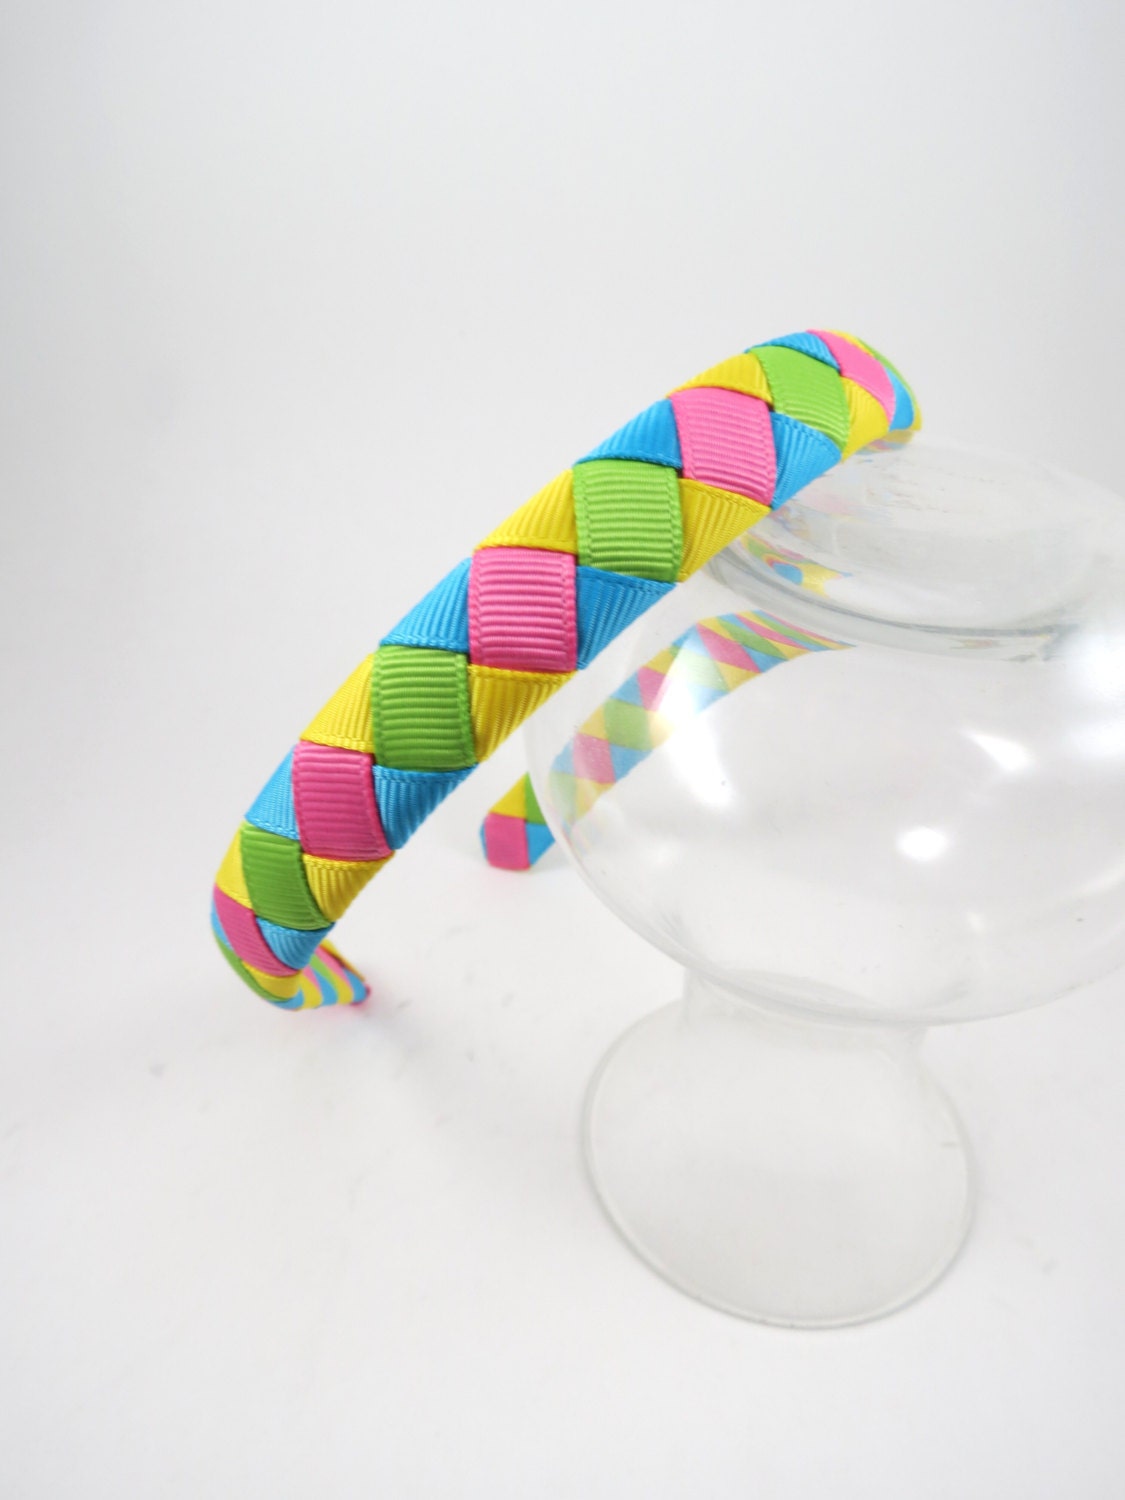 Ribbon Woven Headband Hot Pink Headband Turquoise Headband | Etsy